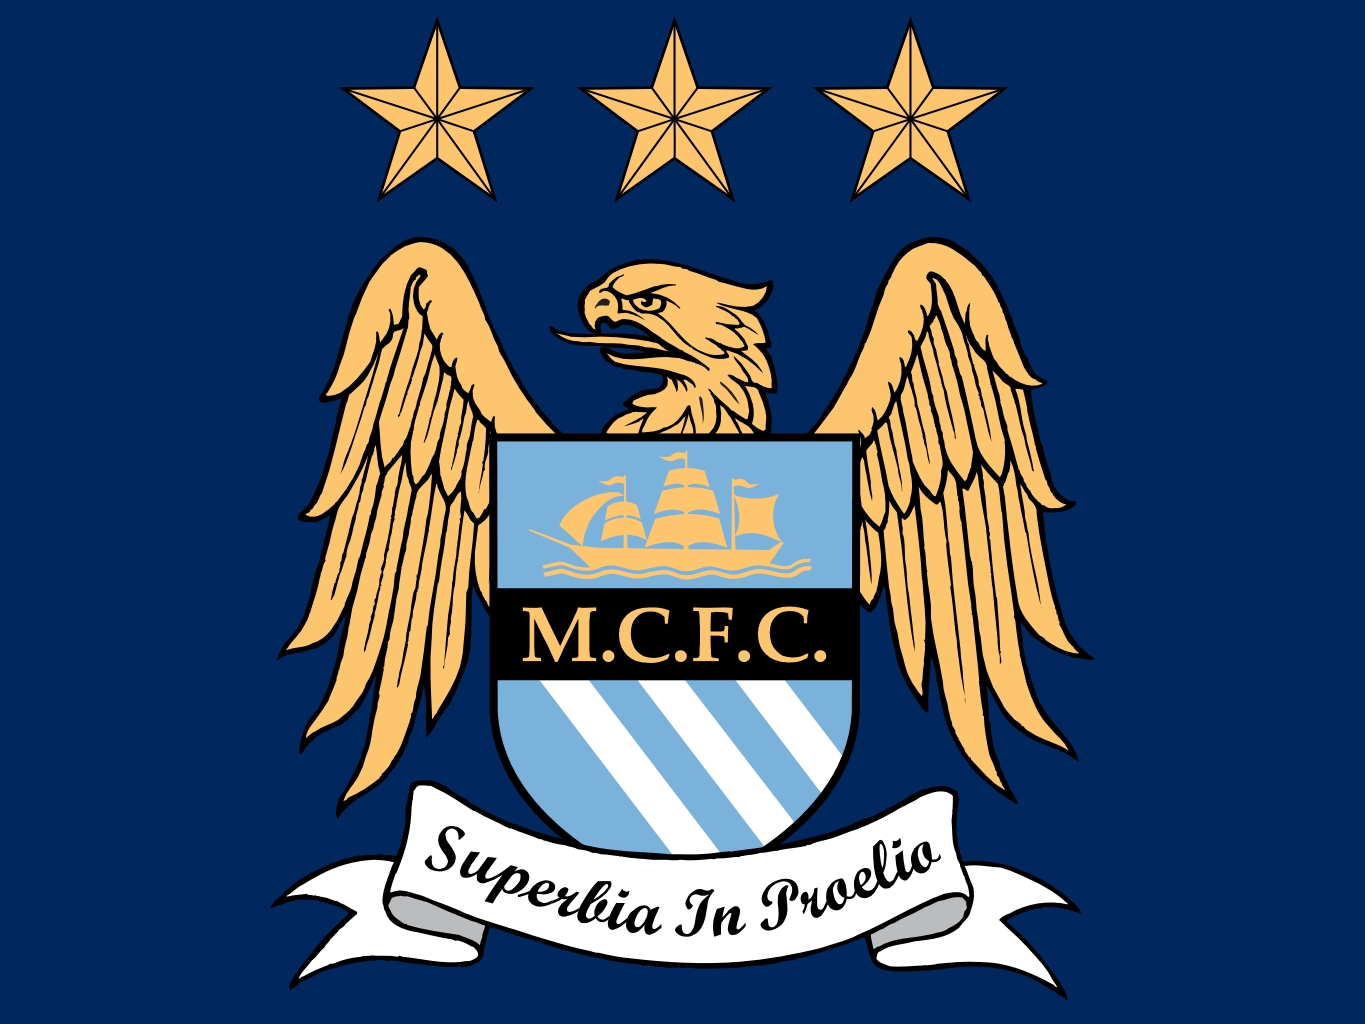 http://4.bp.blogspot.com/-O4BHwuBpqTQ/UGM4ETM60hI/AAAAAAAAAEY/vNHmMZmWmQU/s1600/Manchester_city_football_club_Logo_Wallpaper.jpg